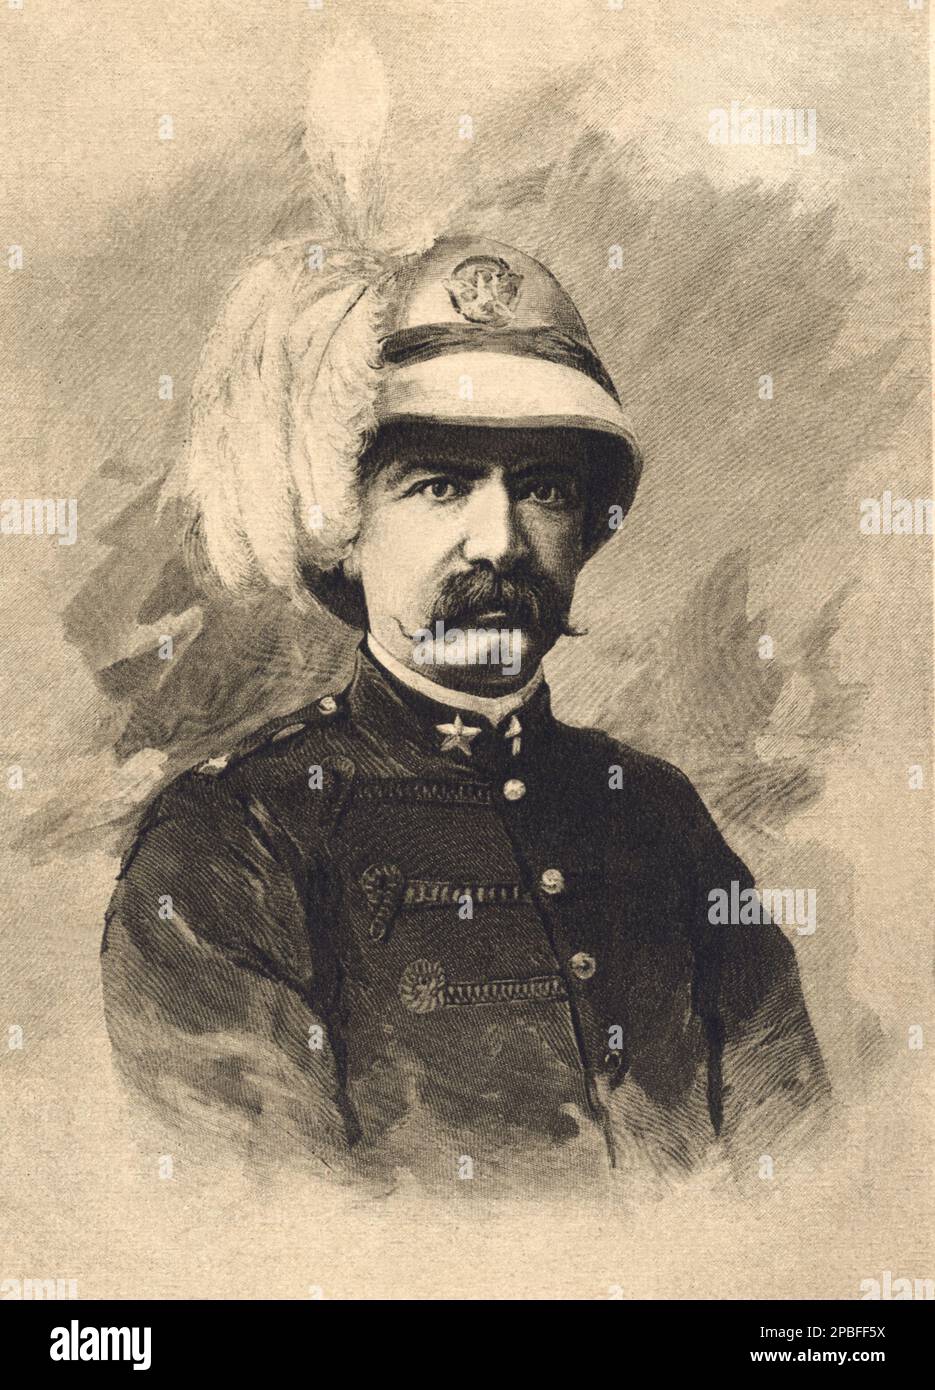 1890 : The italian Generale ANTONIO BALDISSERA ( Padova 1838 - Firenze 1917 ). Su lugar de nacimiento en 1858 aún bajo el dominio austriaco, el joven Baldissera entró en el ejército austriaco, en el que sirvió con distinción en un regimiento de infantería; fue capitán en los 7th Jagers en Custozza (1866). Pero cuando Venetia se convirtió en italiano, optó por la nacionalidad italiana, conservando su rango en el ejército italiano. En 1879 fue ascendido coronel de los 7th Bersaglieri y general de división en 1887, cuando se fue a Eritrea bajo el mando del general Asinari di San Marzano, permaneciendo en la colonia como gobernador después de la reticencia de este último Foto de stock